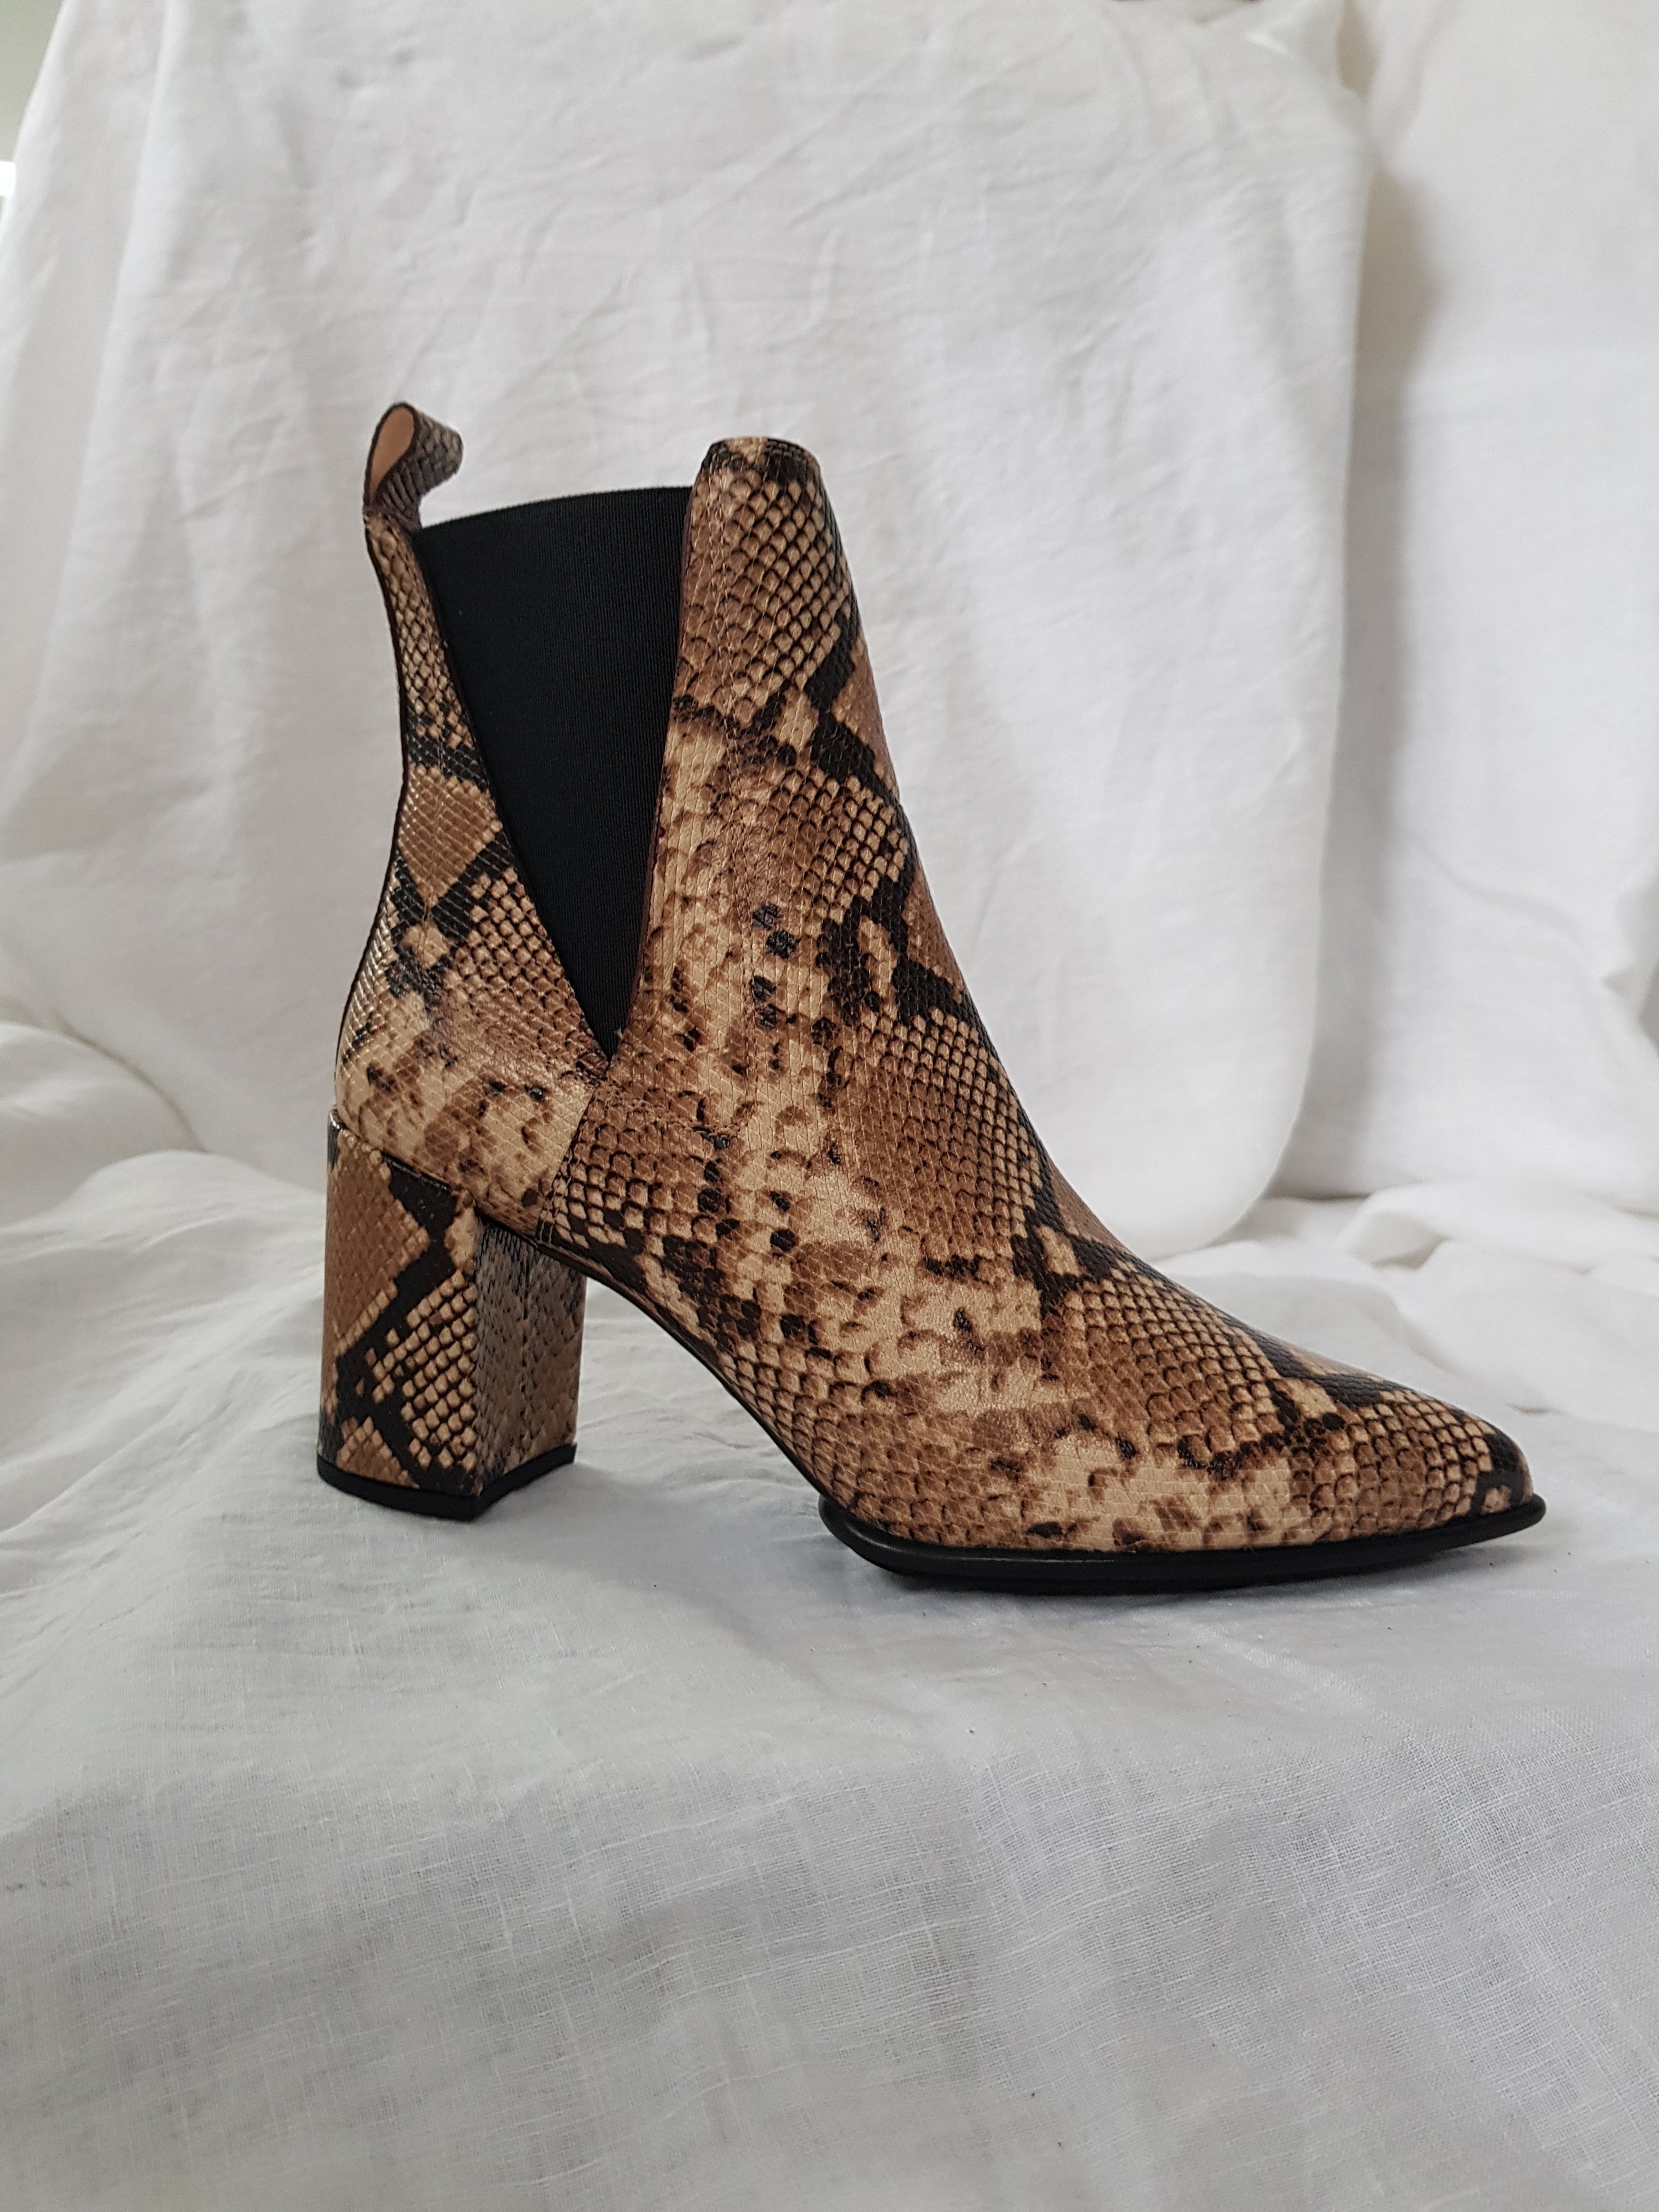 Unisa kilman viper leather pull on heeled ankle boot online at hunterminx